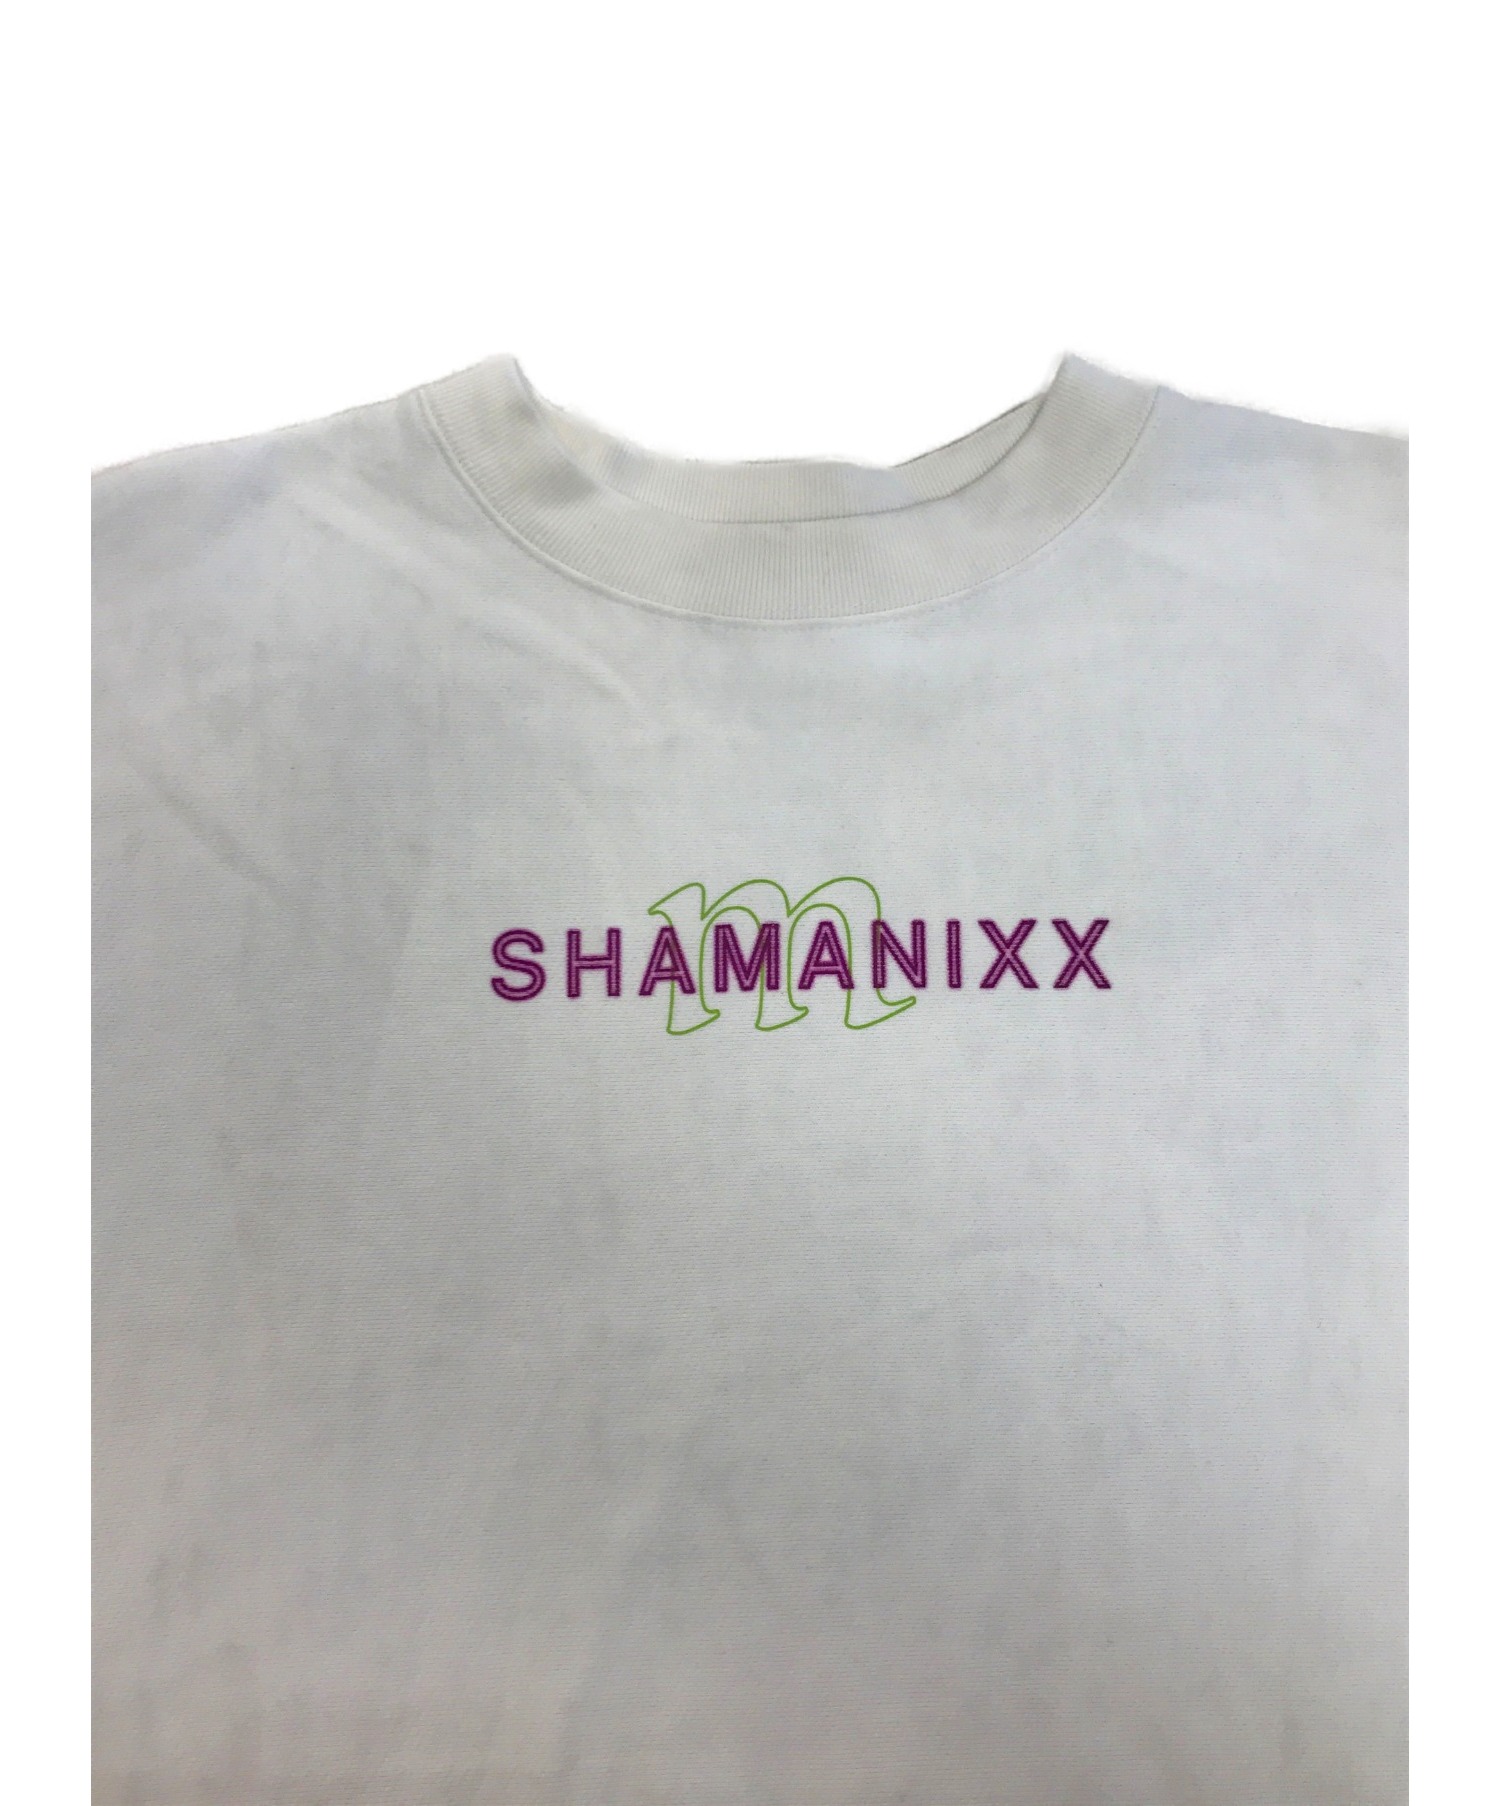 juemi (ジュエミ) Shamanixx Big Sweat ホワイト サイズ:FREE 1050801